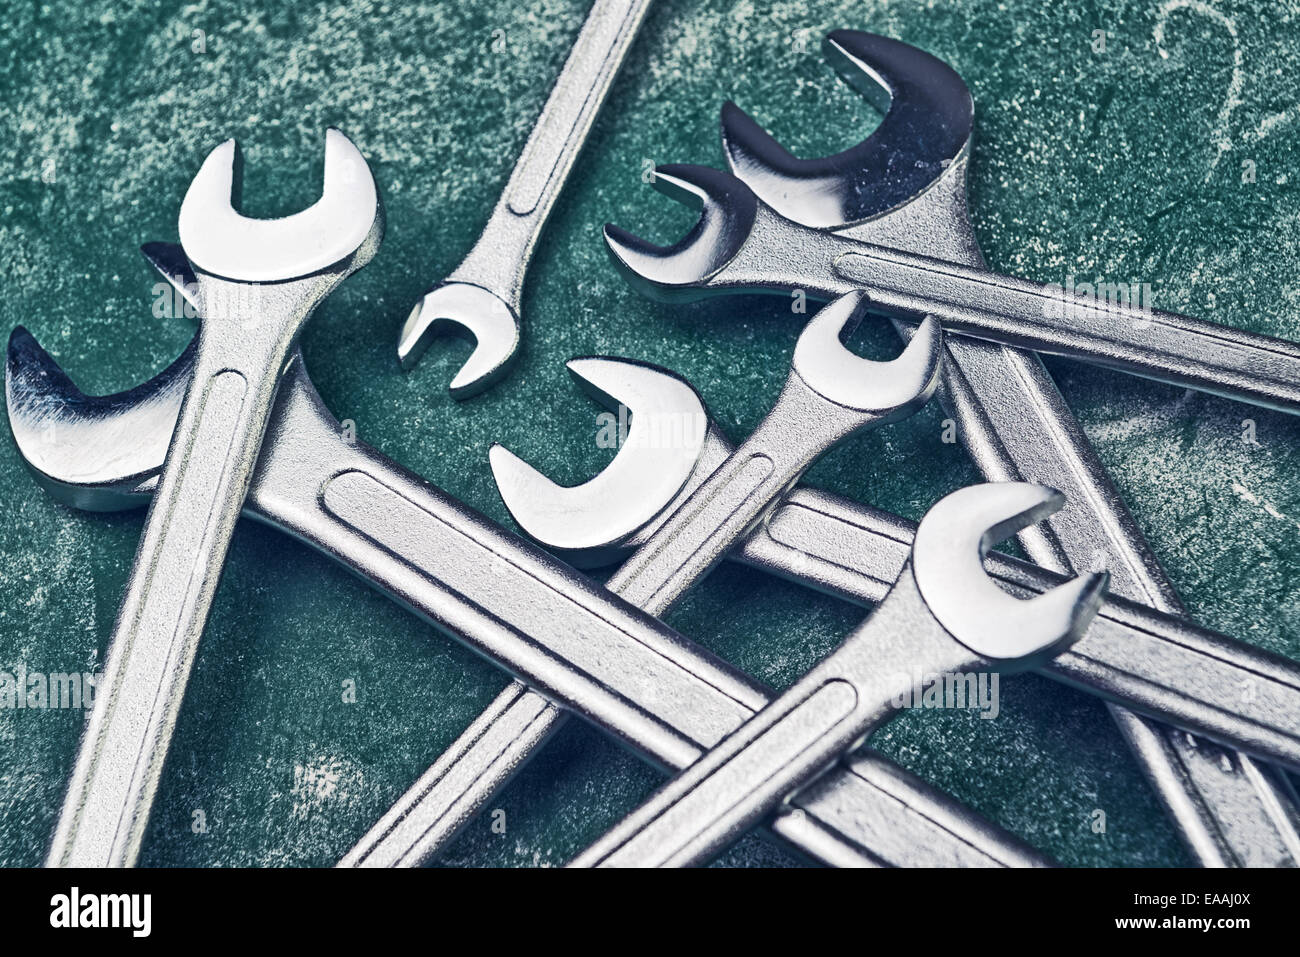 Schraubenschlüssel Kiefer Spanner Tools gestapelt auf Workshoptisch. Stockfoto